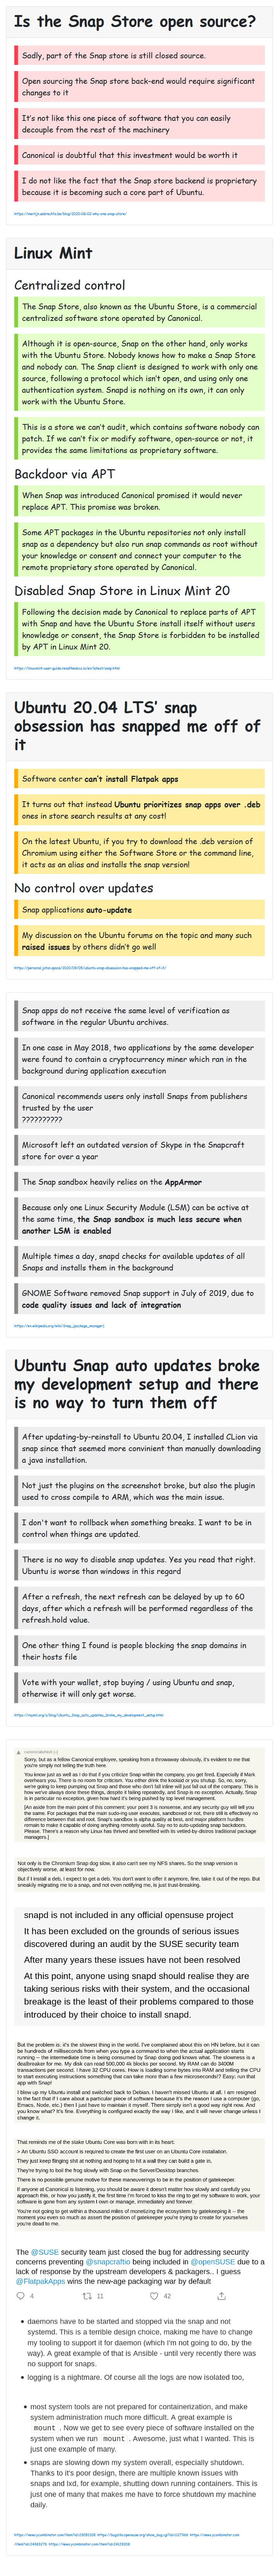 UbuntuSnaps